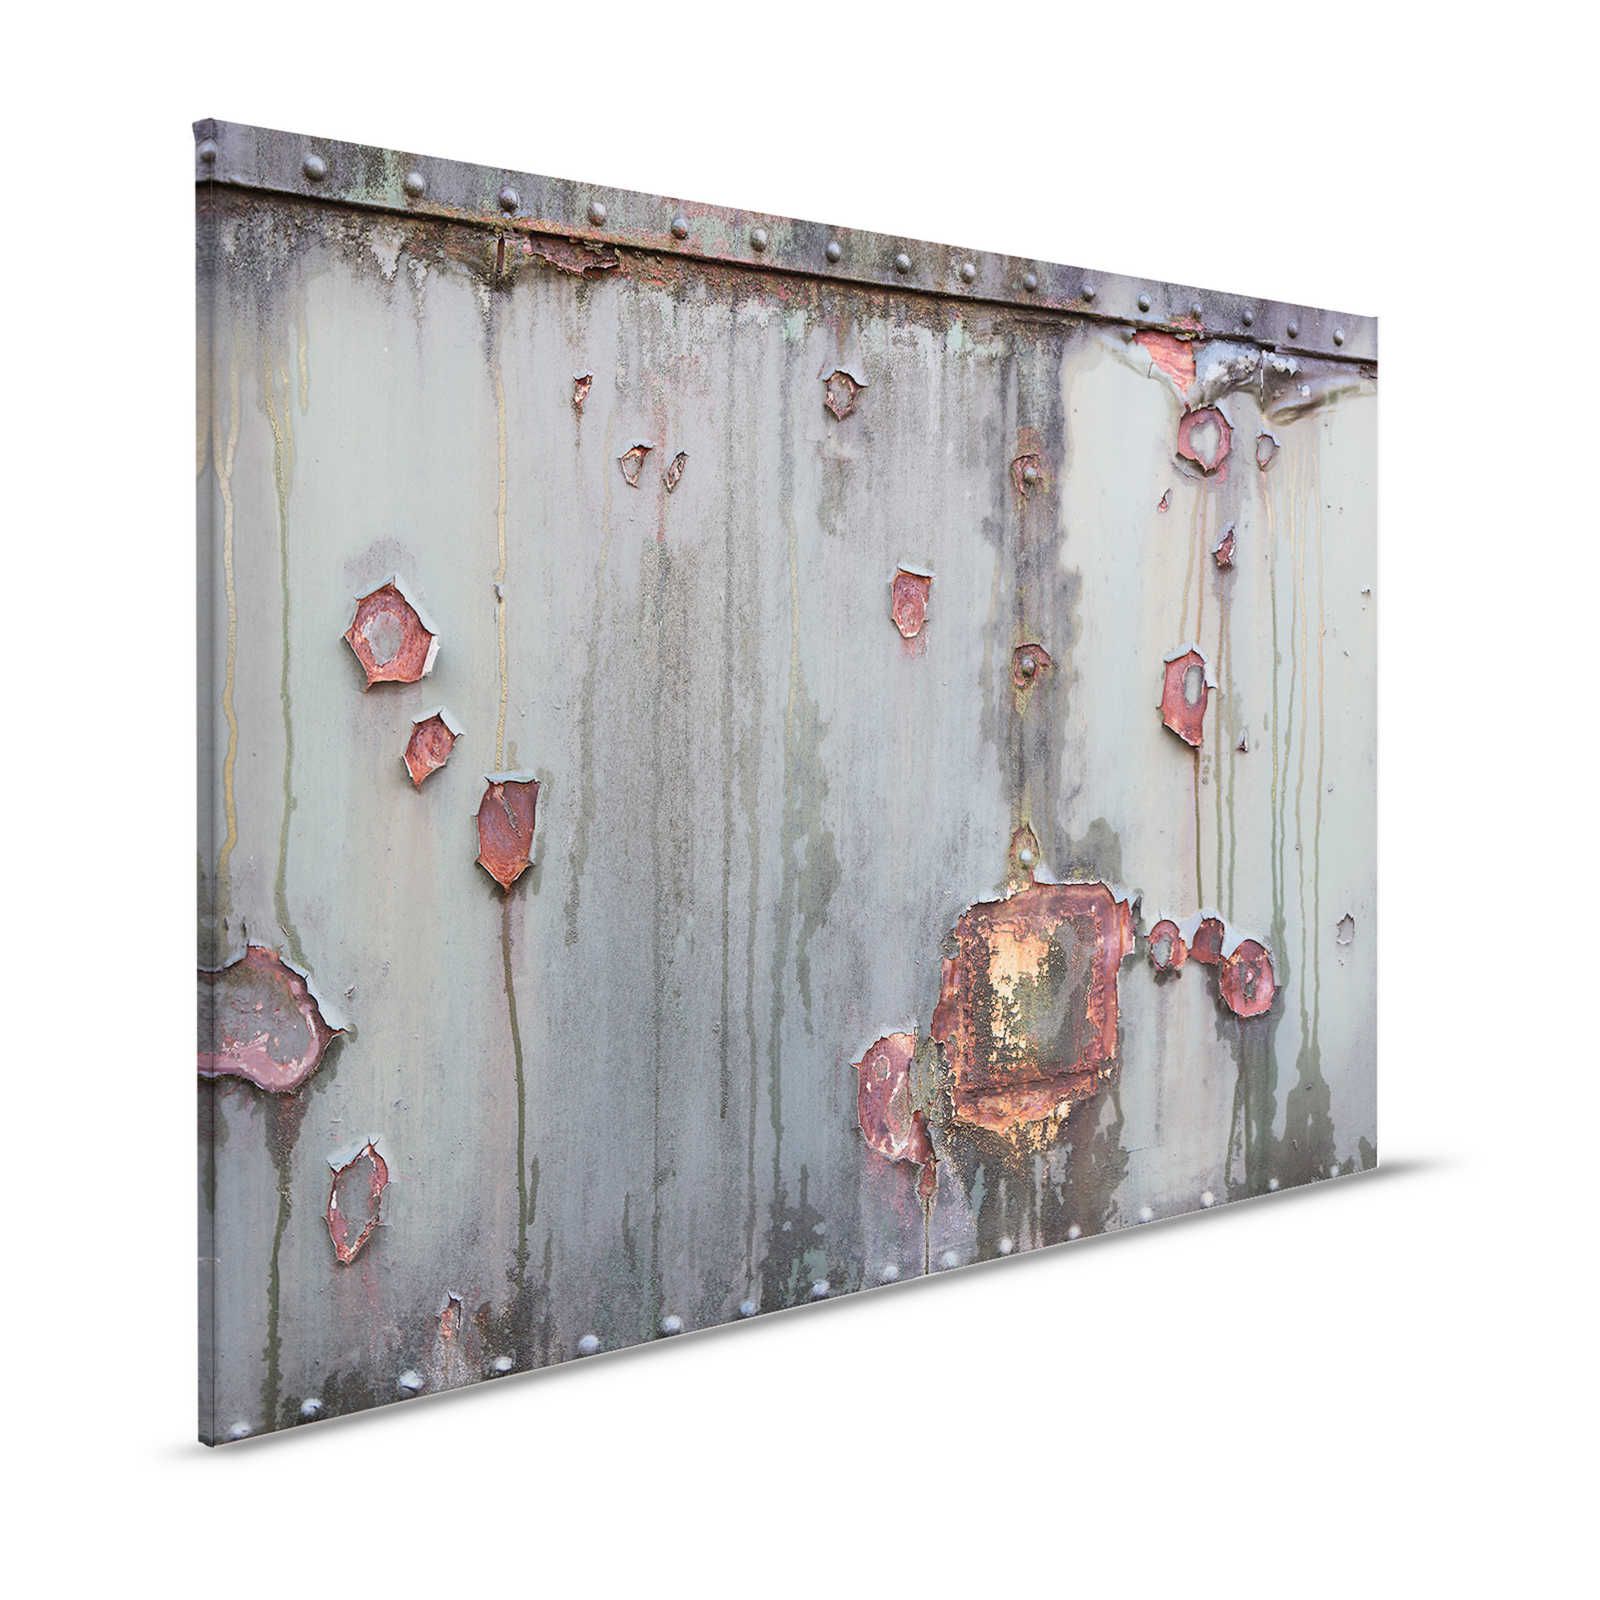 Mur de métal - toile industrielle avec rouille & look usé - 1,20 m x 0,80 m
